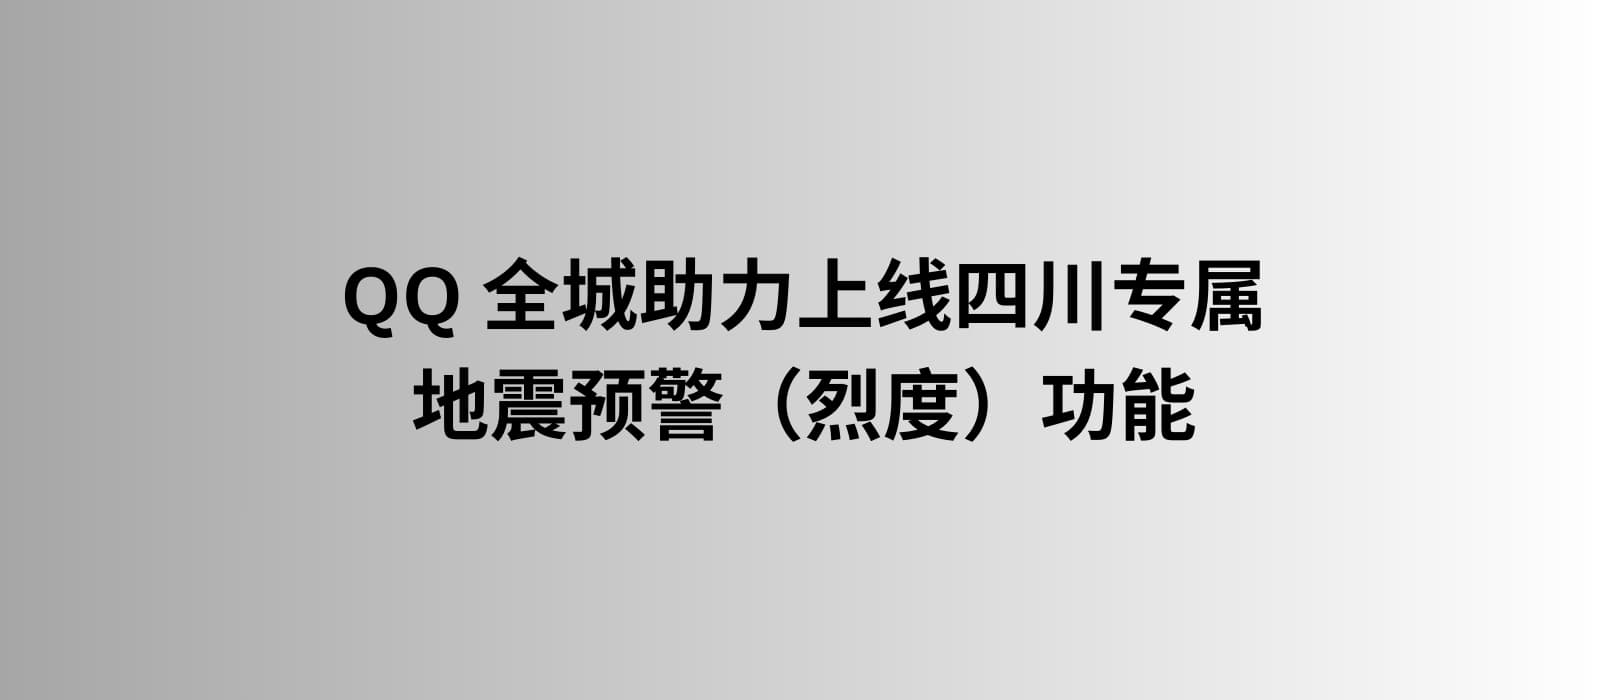 QQ 上线四川专属的地震预警（烈度）功能